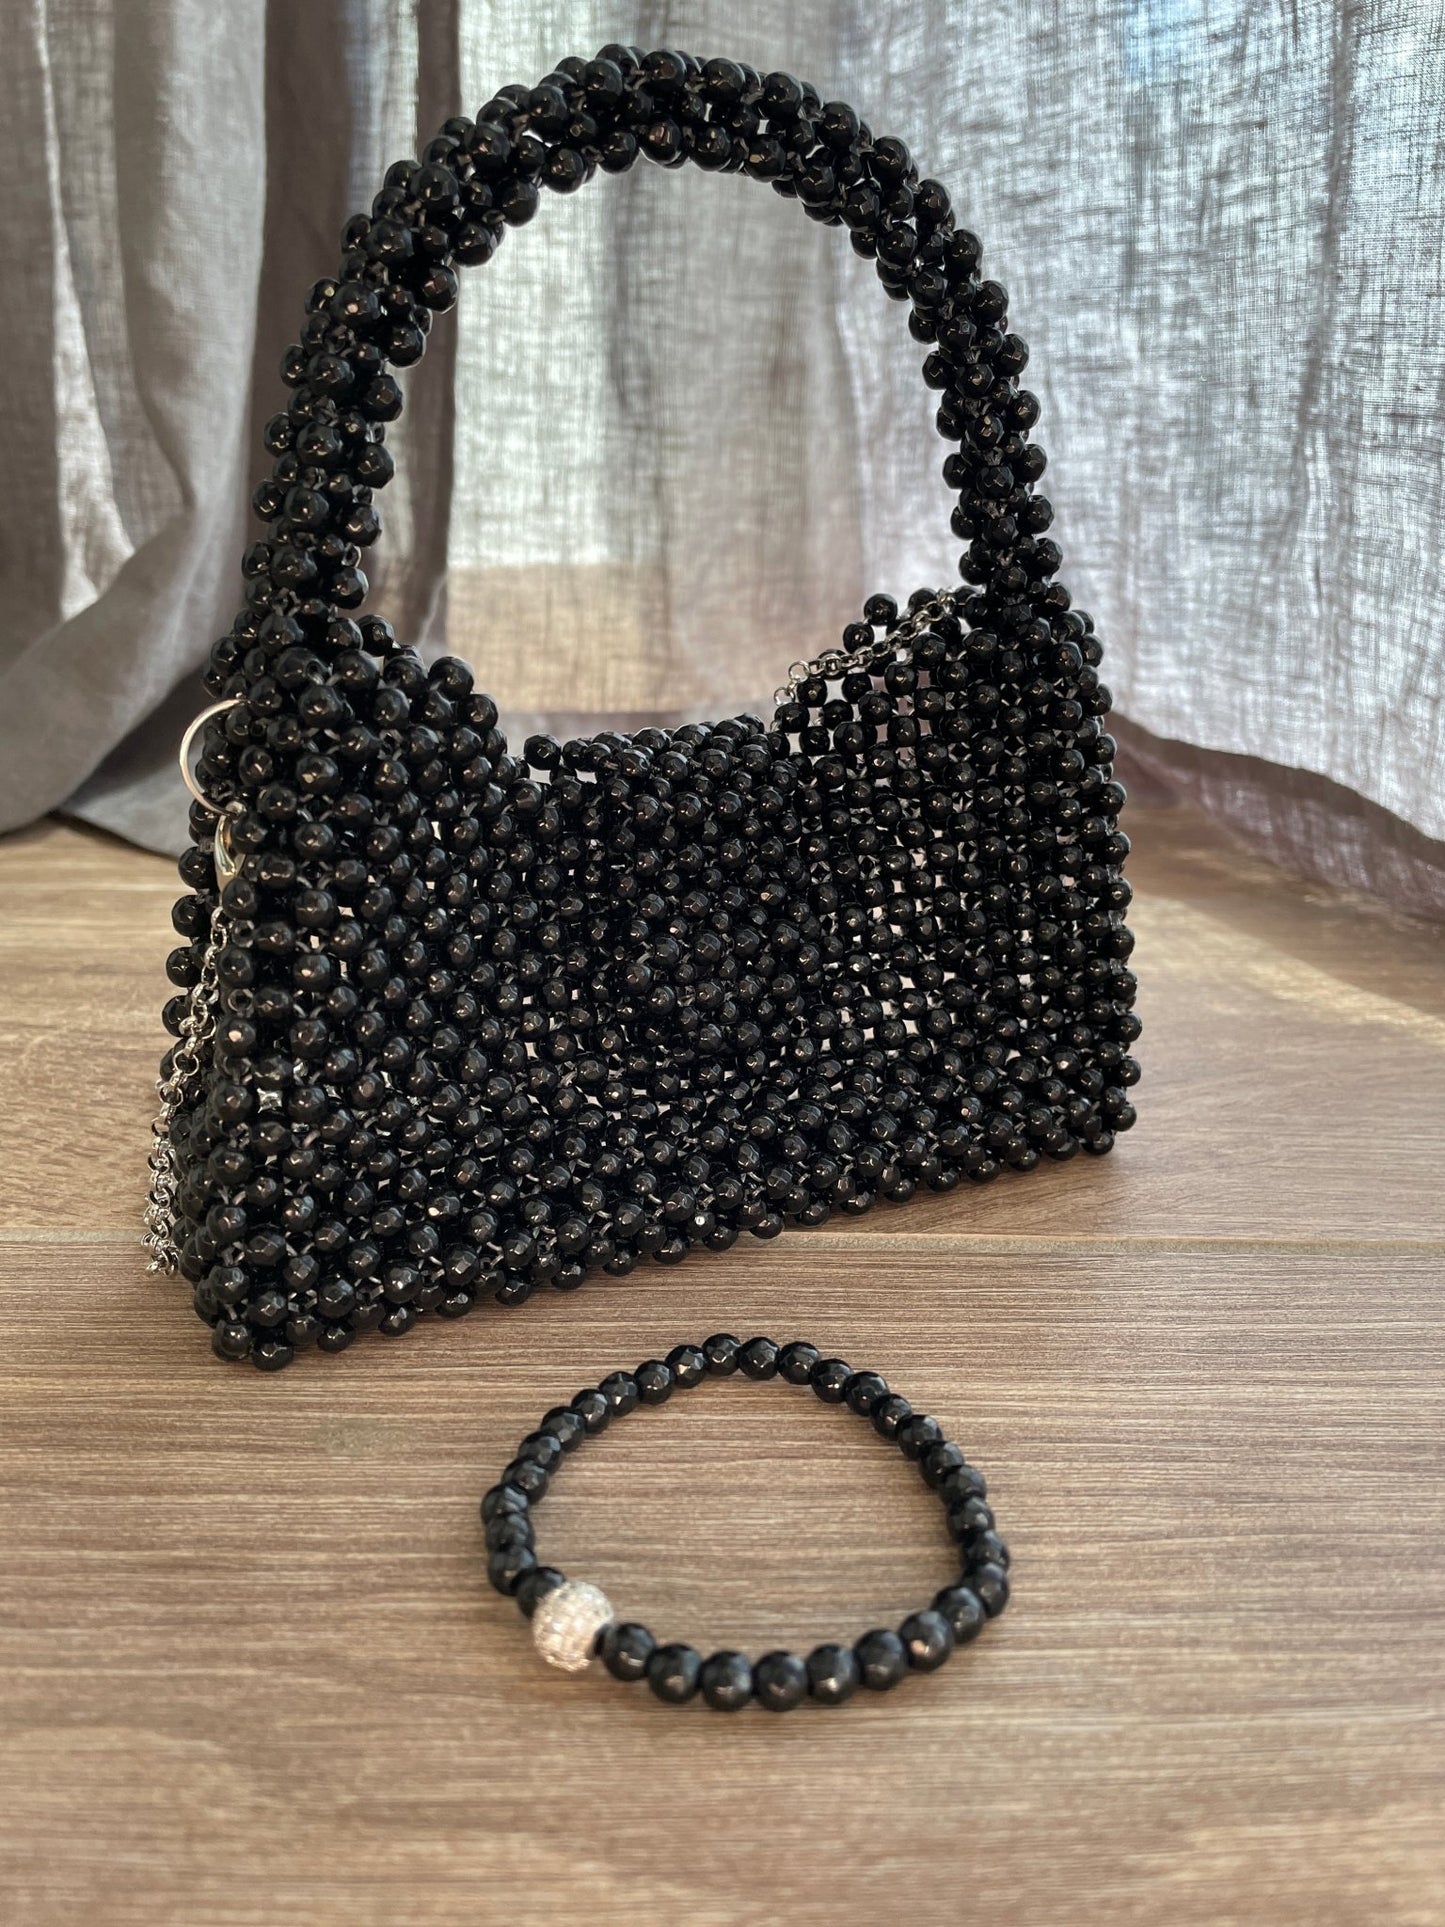 Handtasche aus Onyx schwarz - GRAYSS FASHION & HOME